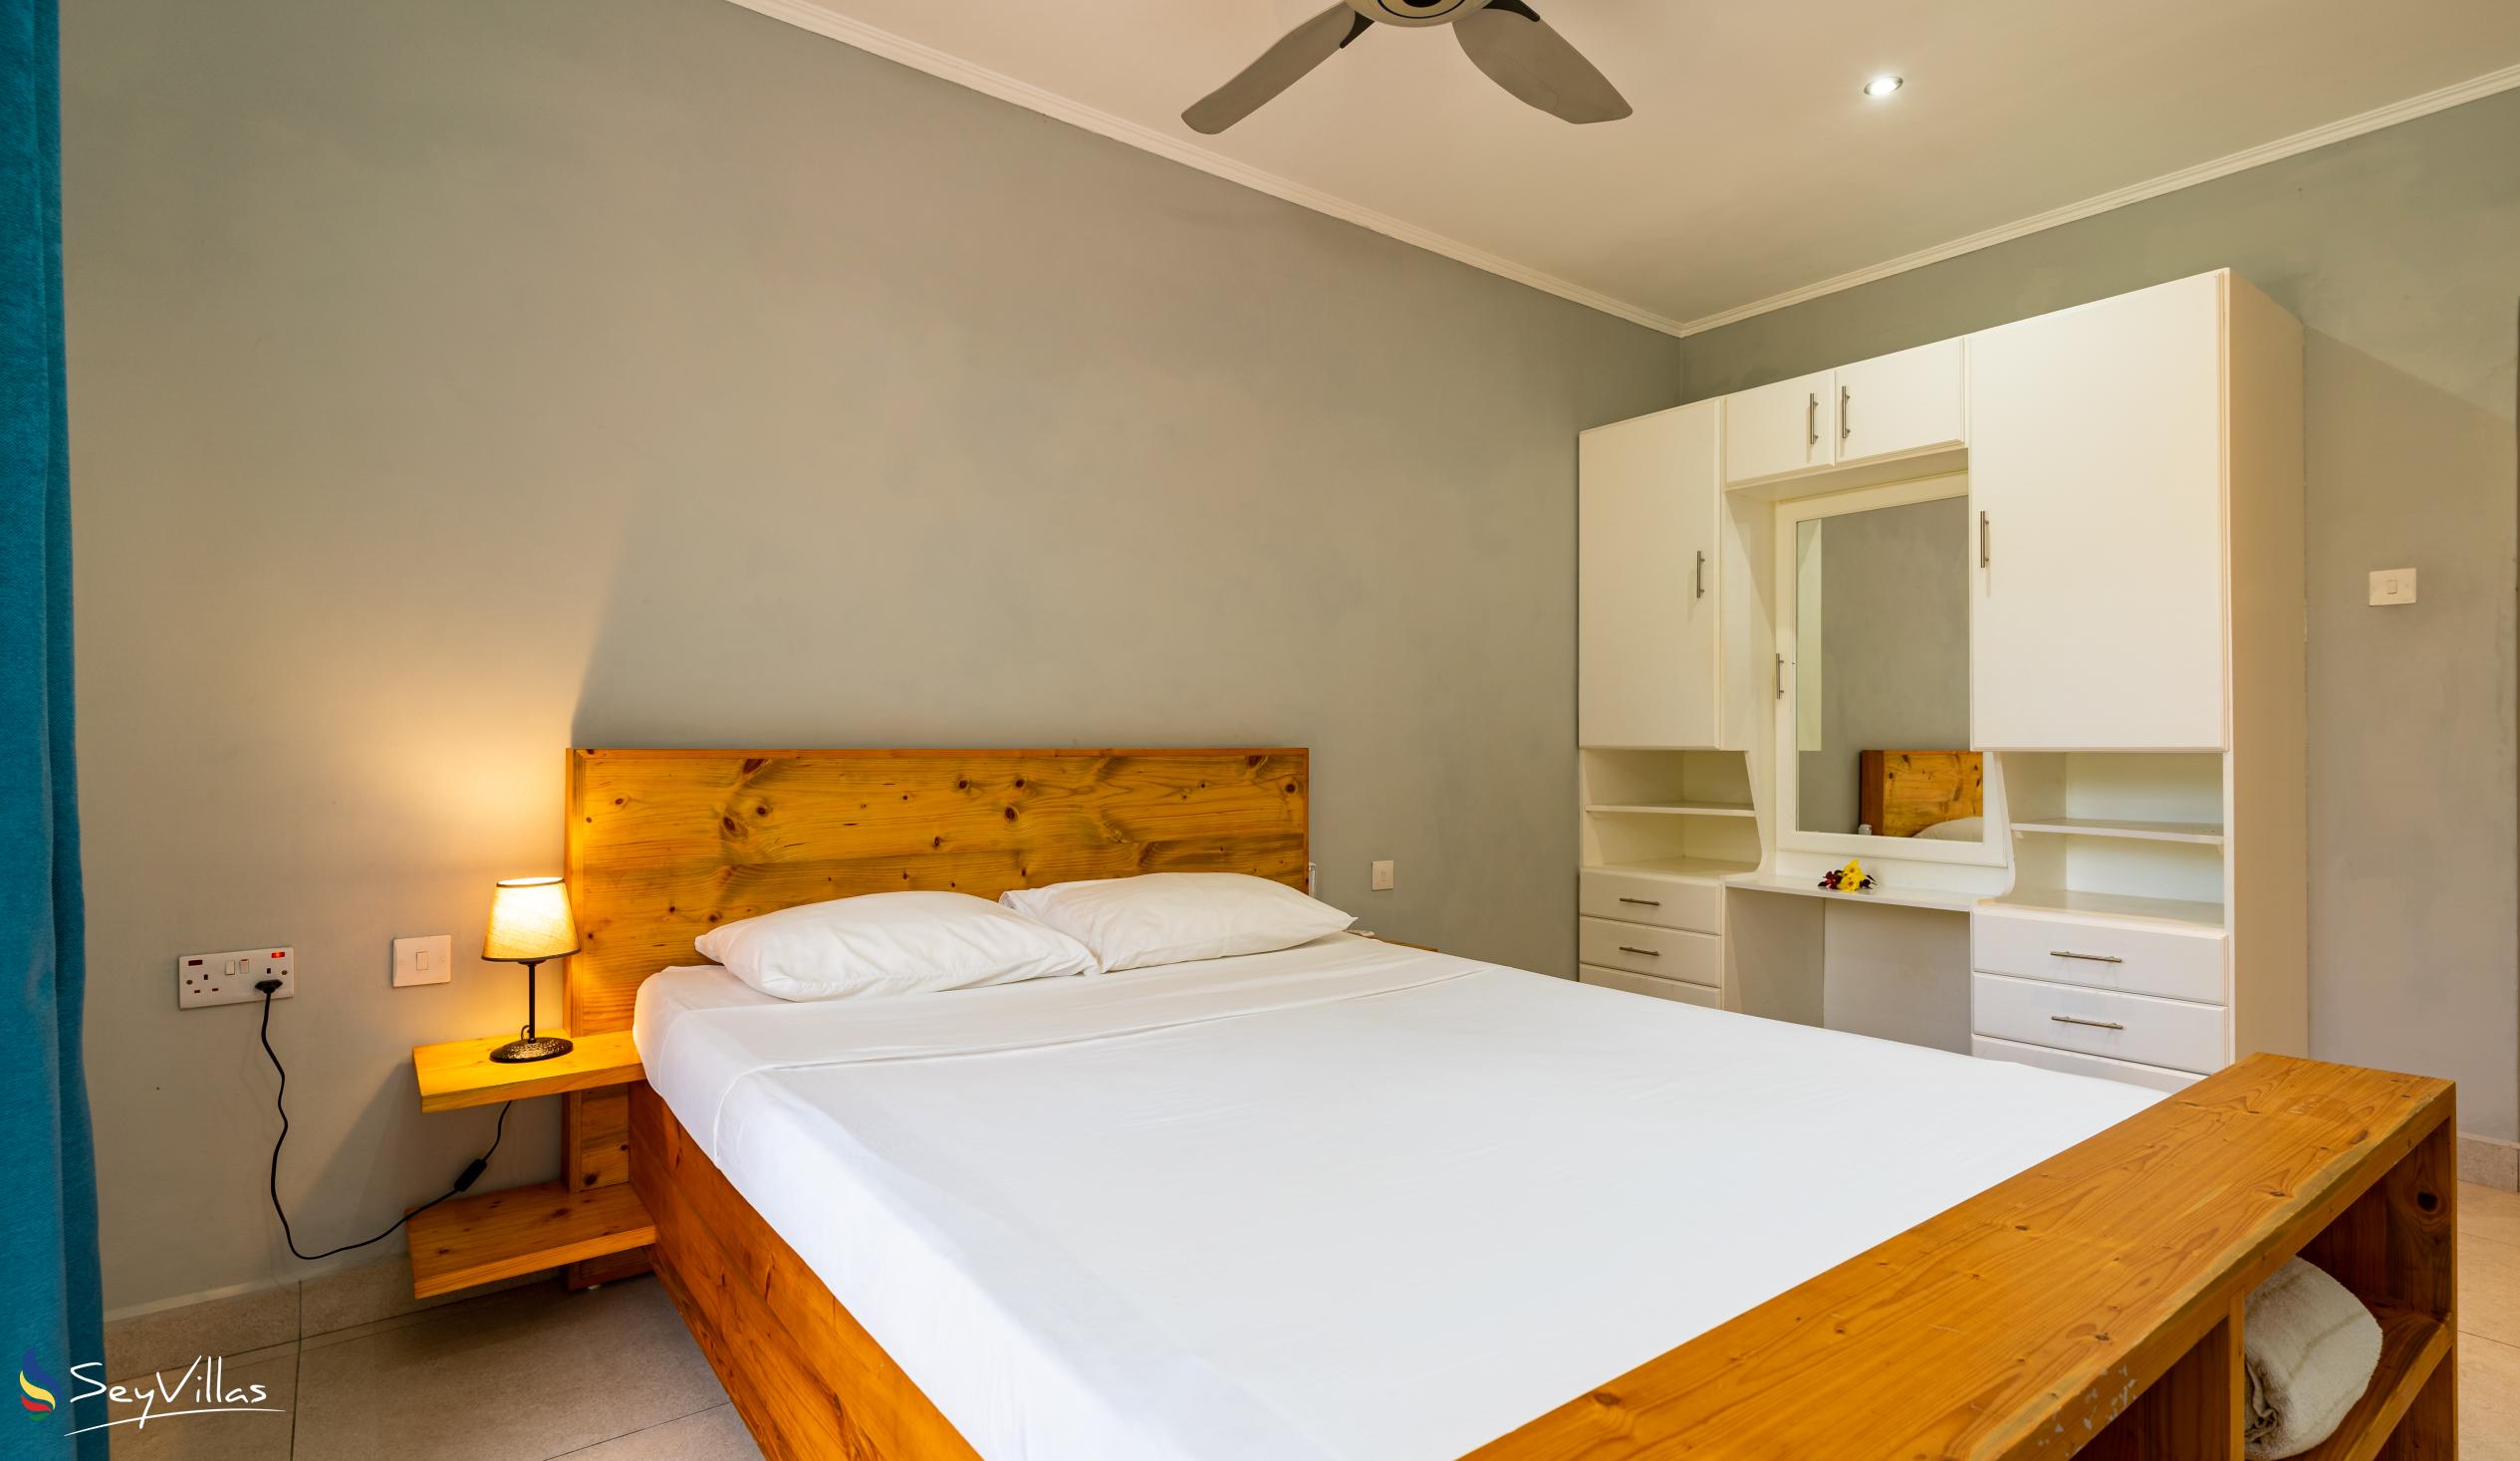 Foto 20: Riverside Residence - Appartamento con 2 camere (piano superiore) - Mahé (Seychelles)